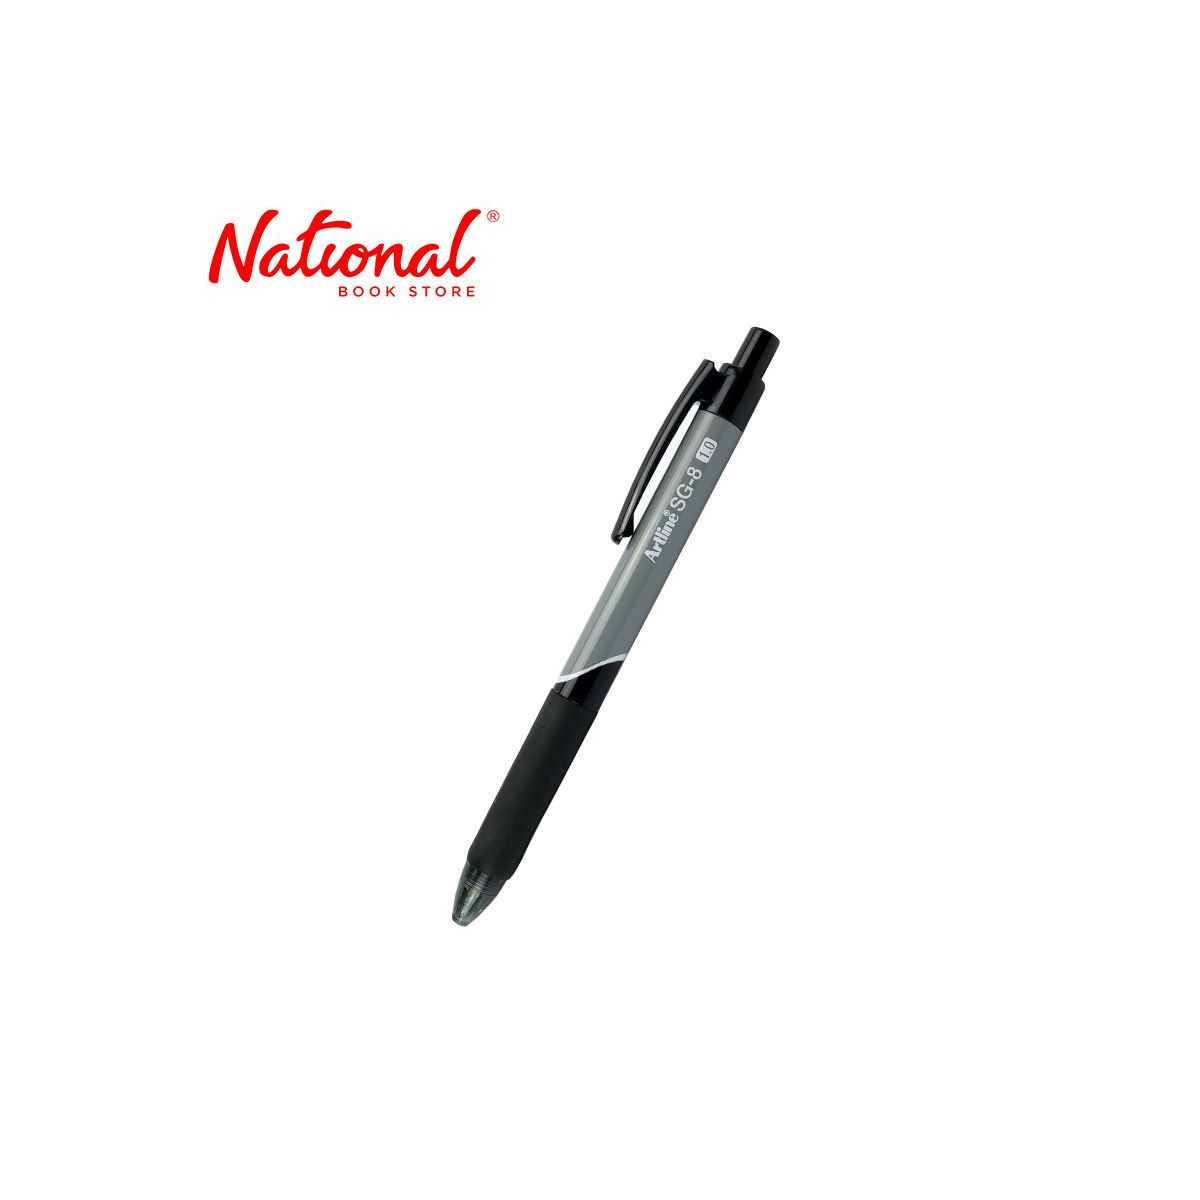 Artline SG-8 Ballpoint Pen Retractable Black 1.0mm EGBSG8810 - Ballpens - School & Office Supplies